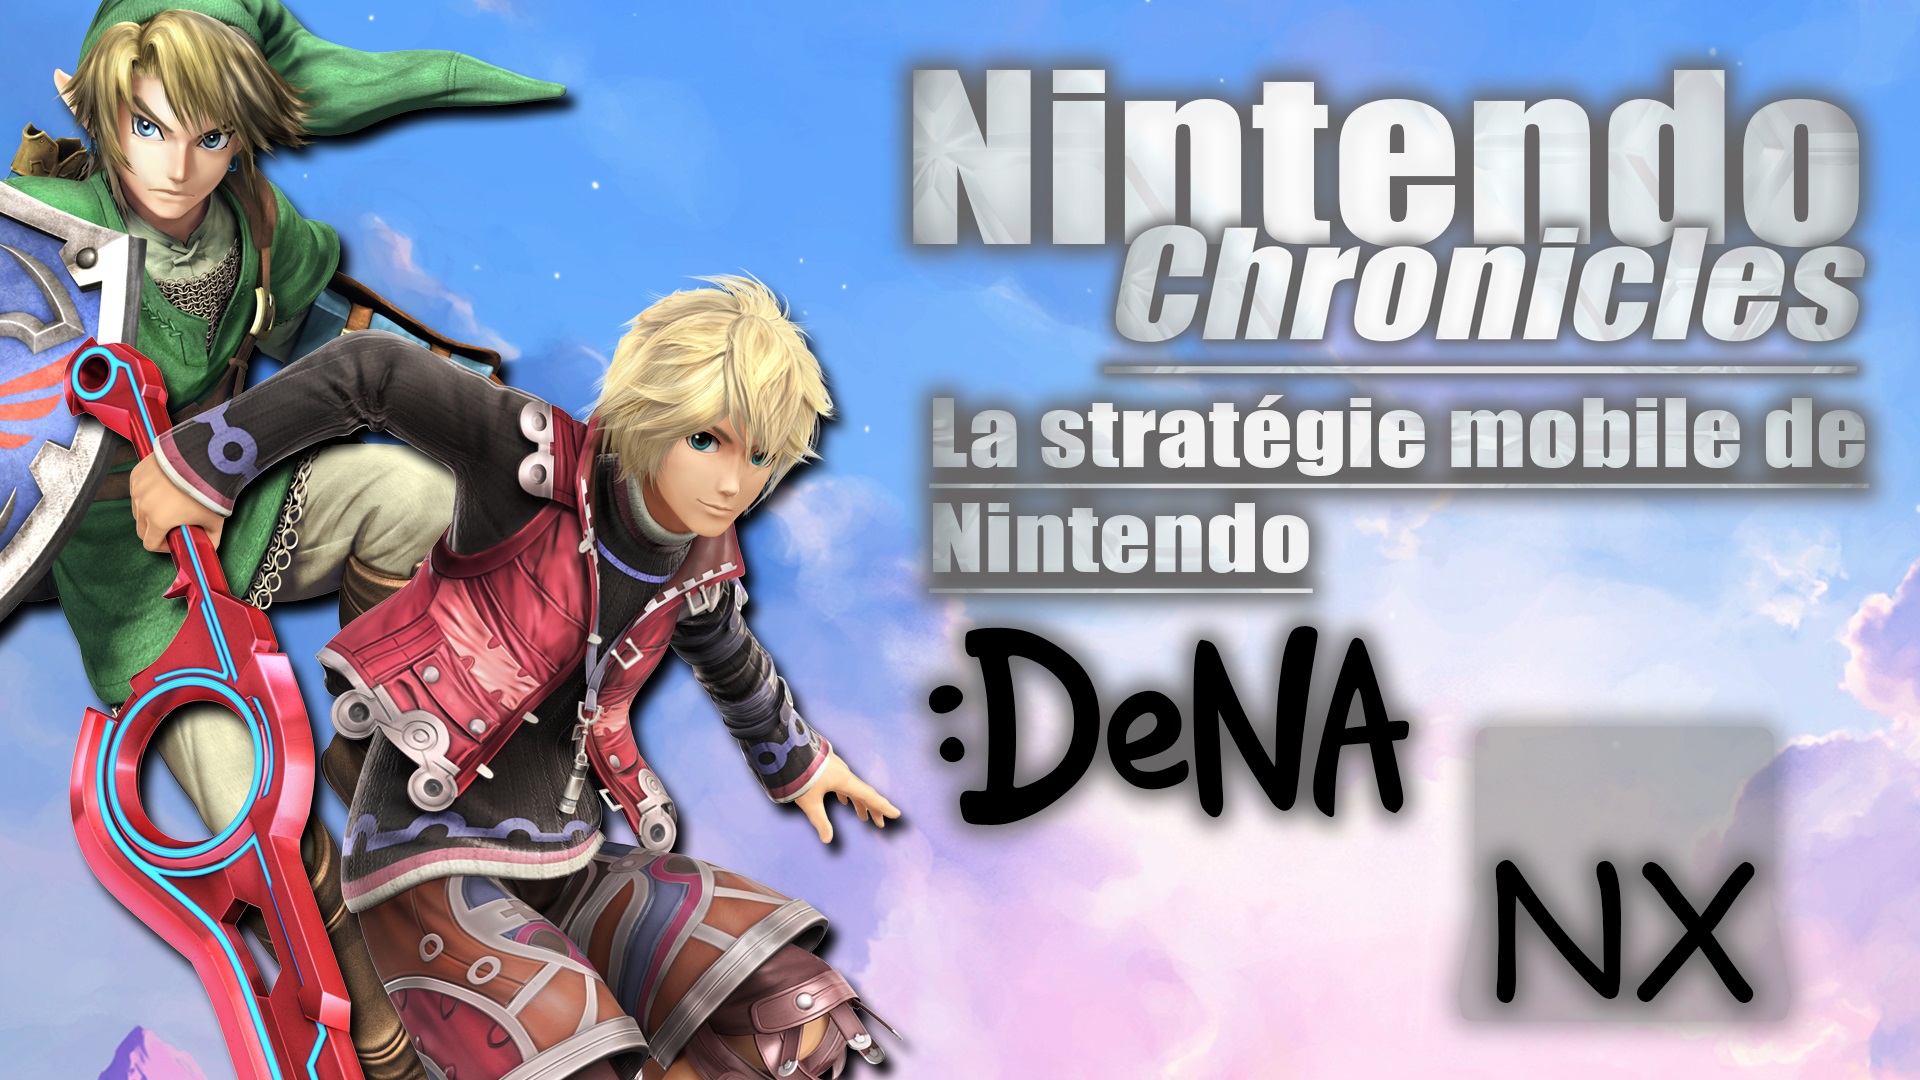 Nintendo Chronicles 3 – La stratégie mobile de Nintendo